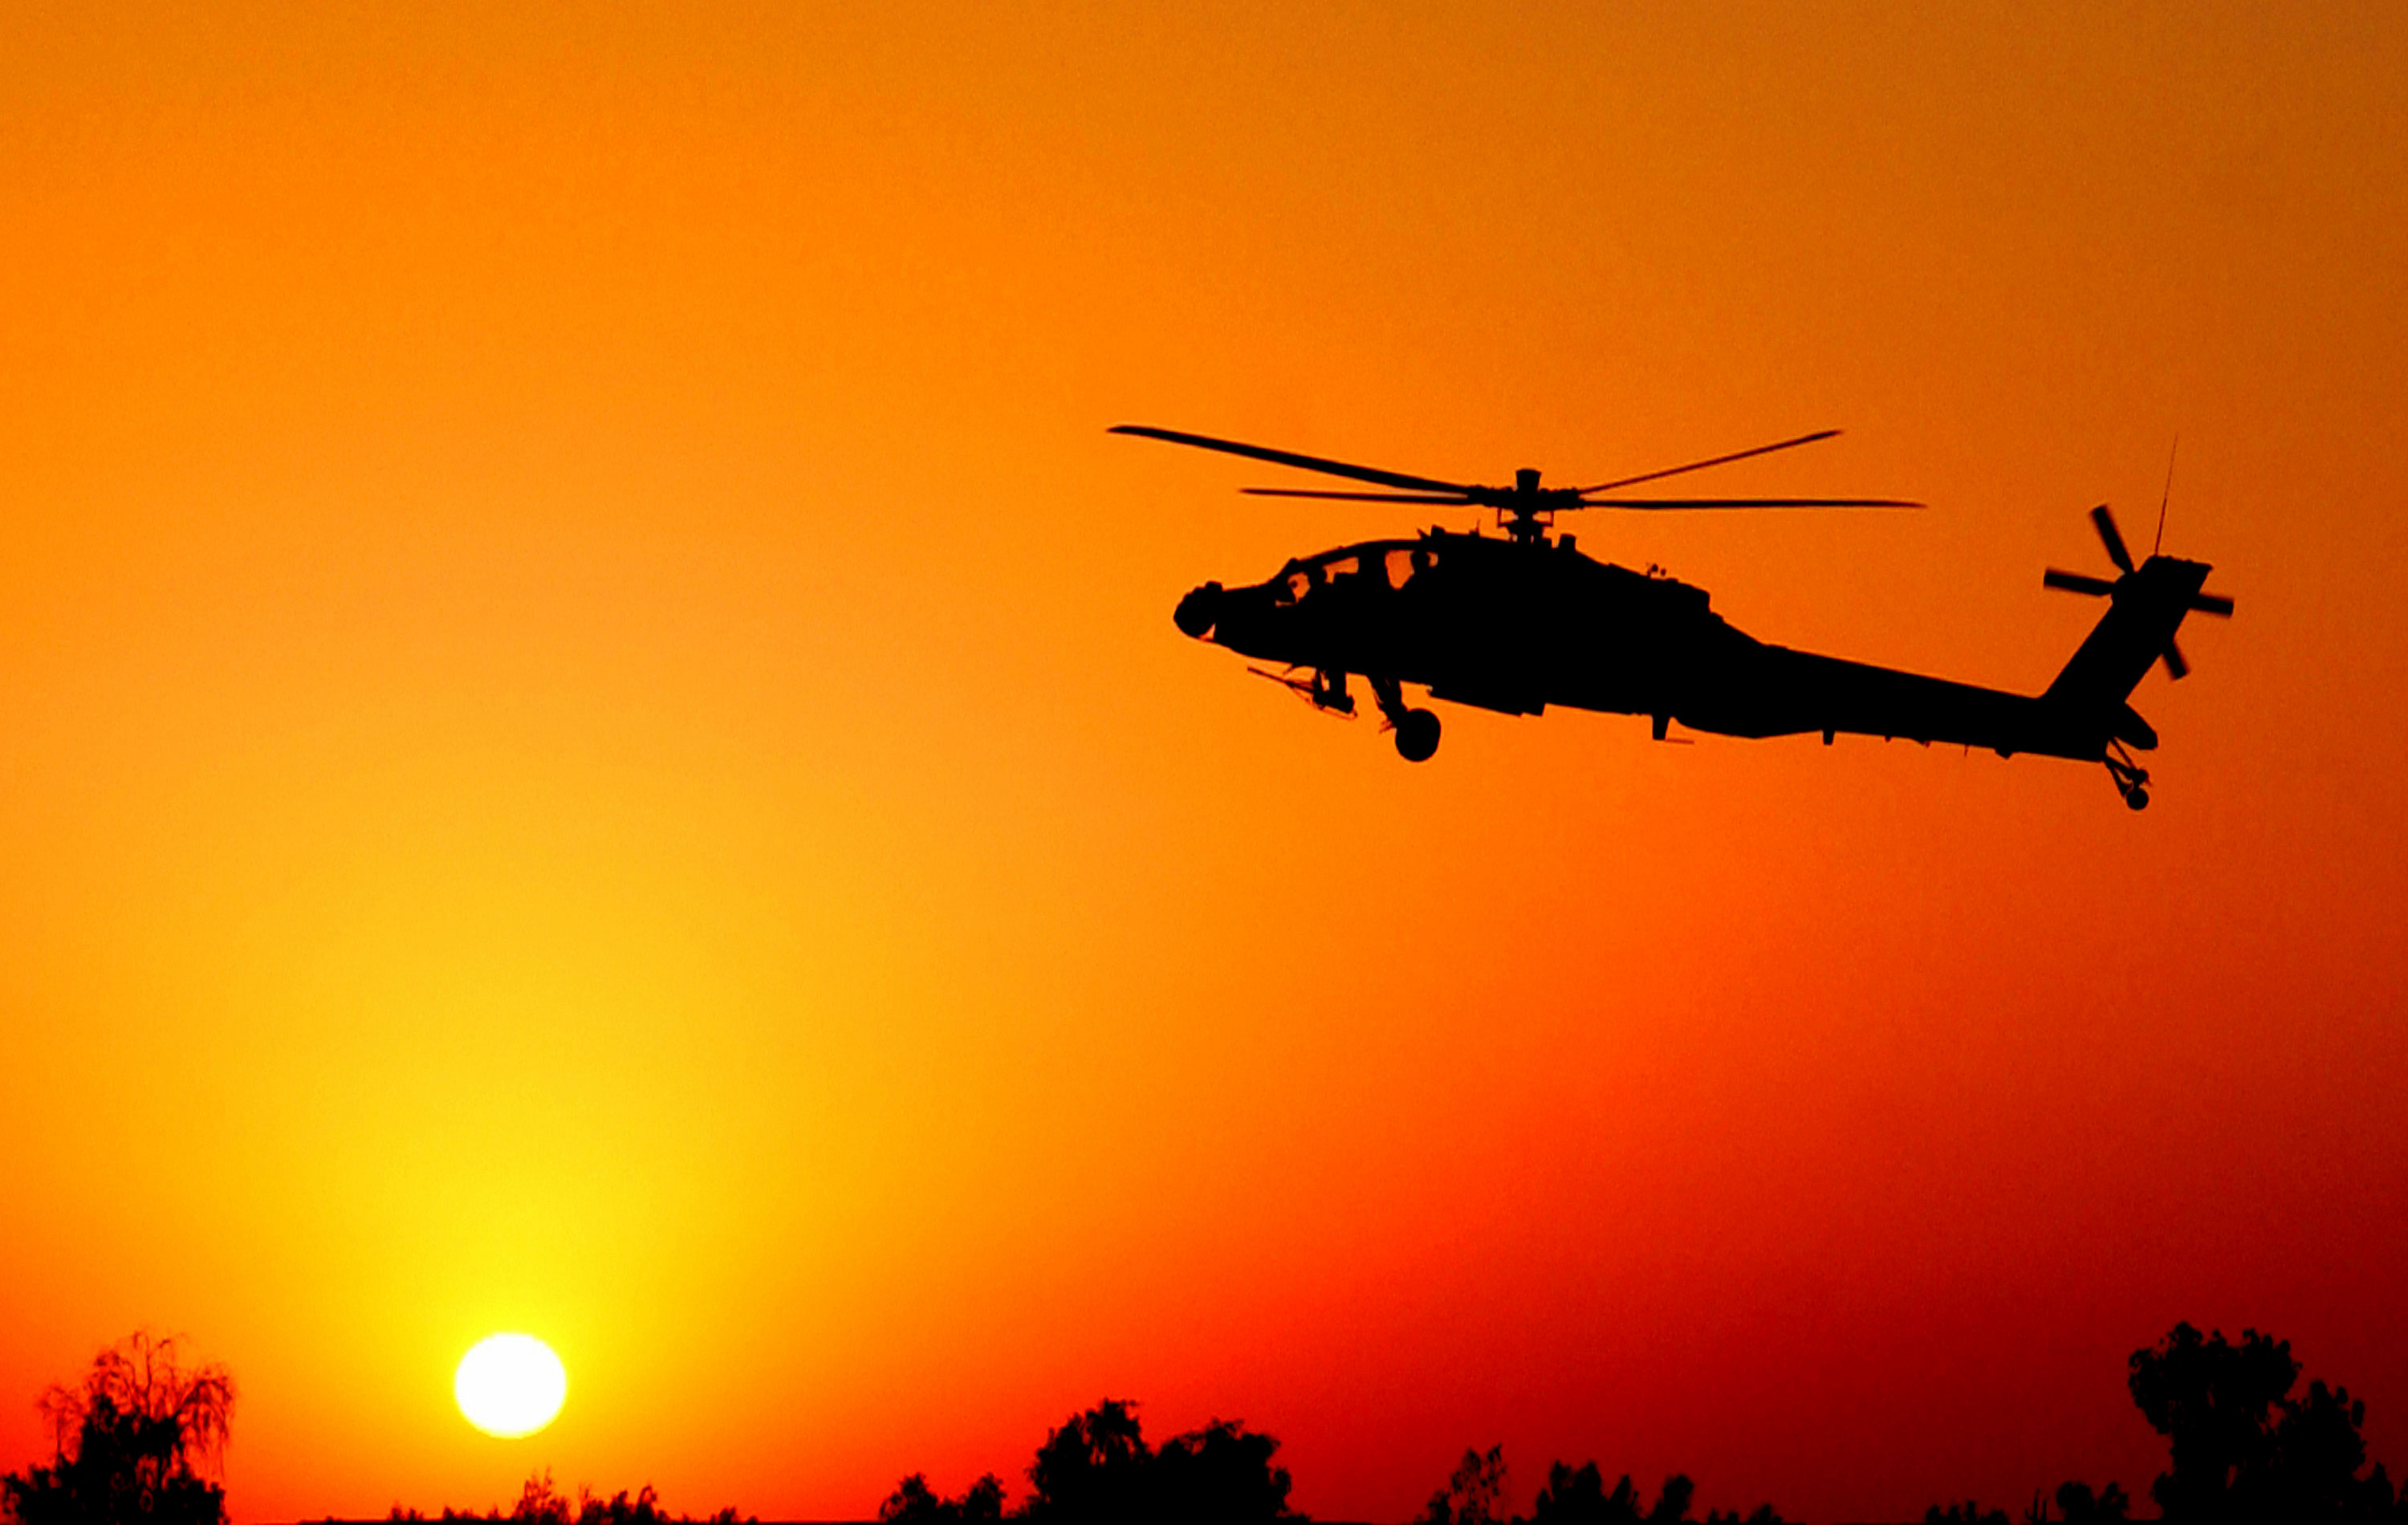 fond d'écran d'hélicoptère,hélicoptère,rotor d'hélicoptère,avion,hélicoptère militaire,véhicule